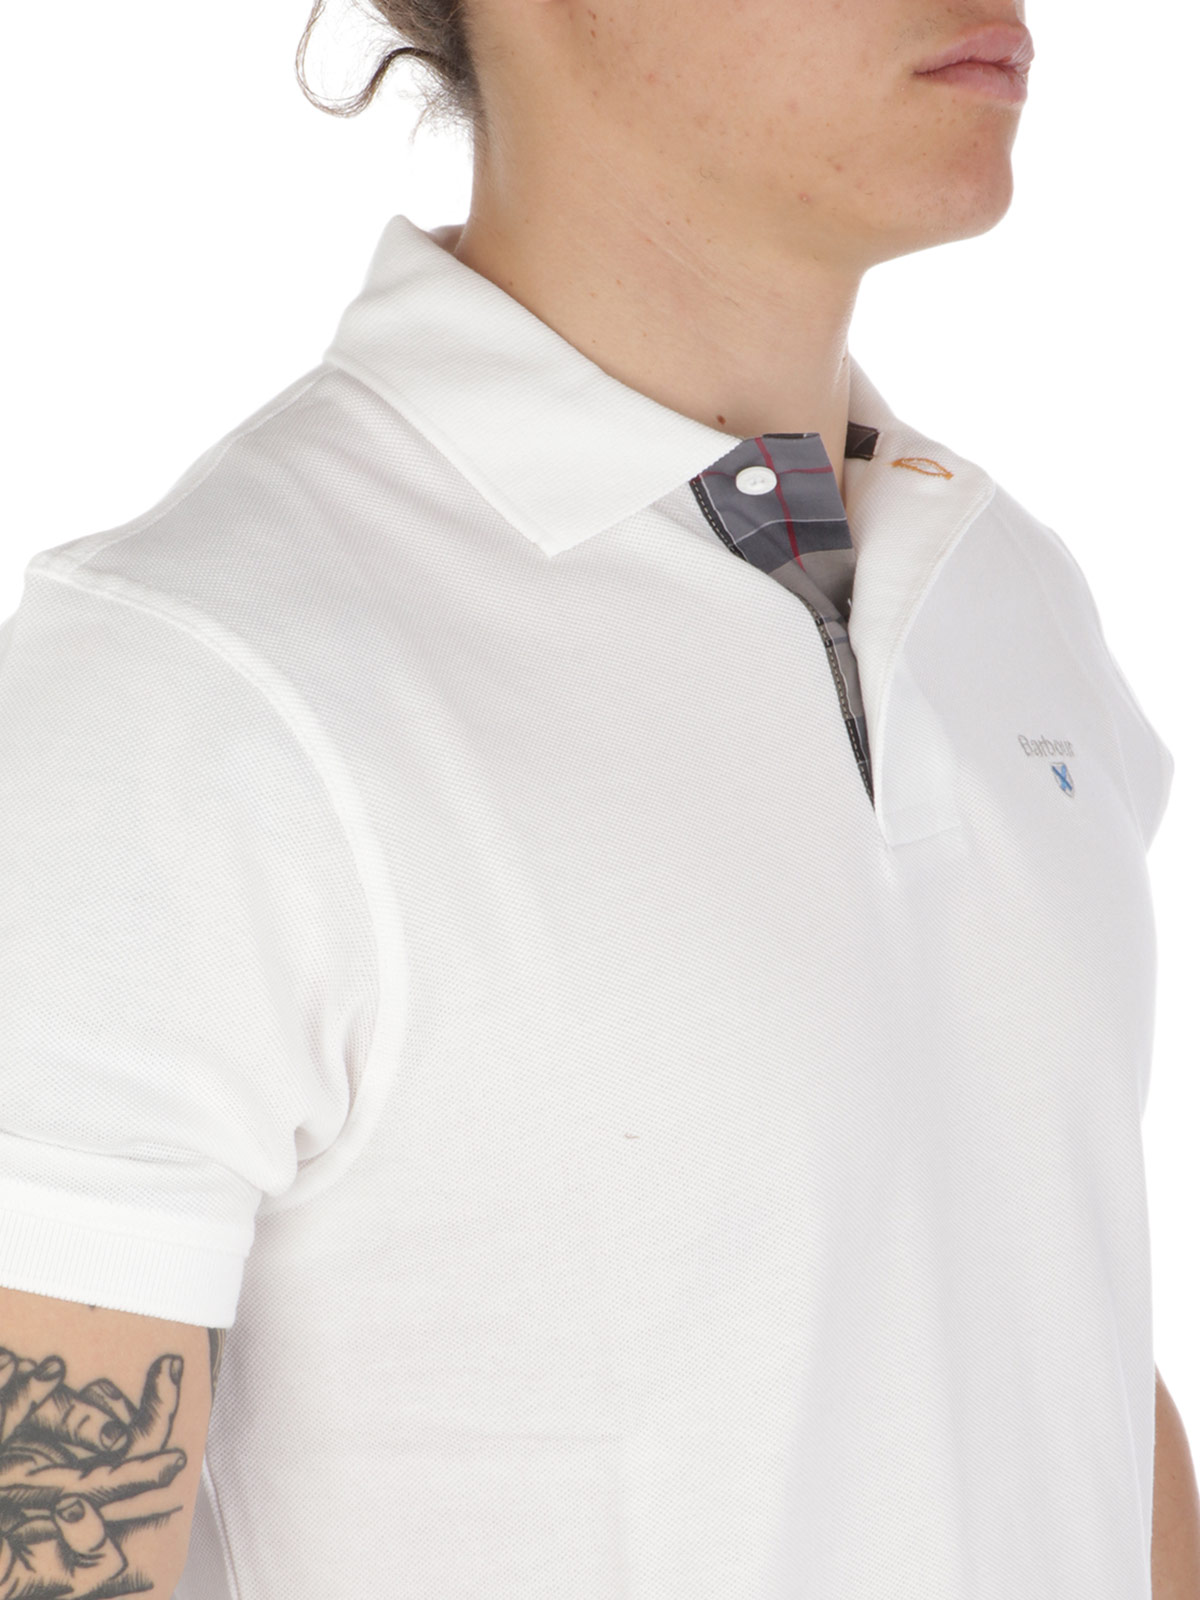 Picture of BARBOUR | Men's Piquè Cotton Polo Shirt